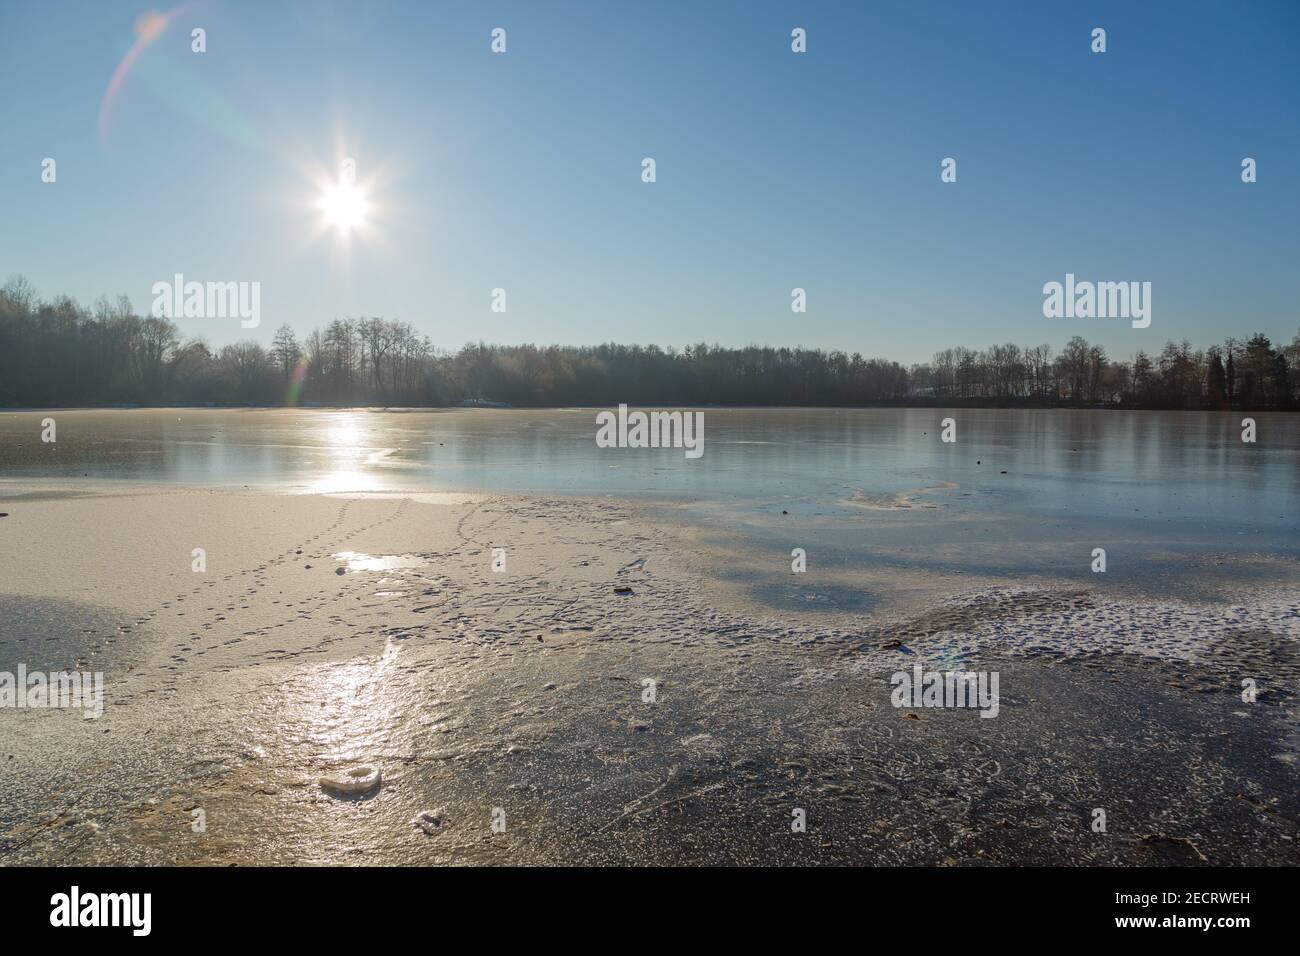 Aufgehende Sonne im Gegenlicht an der zugefrorenen Grube Fernie in Großen-Linden bei Gießen, Hessen, Deutschland im febbraio 2021 Foto Stock